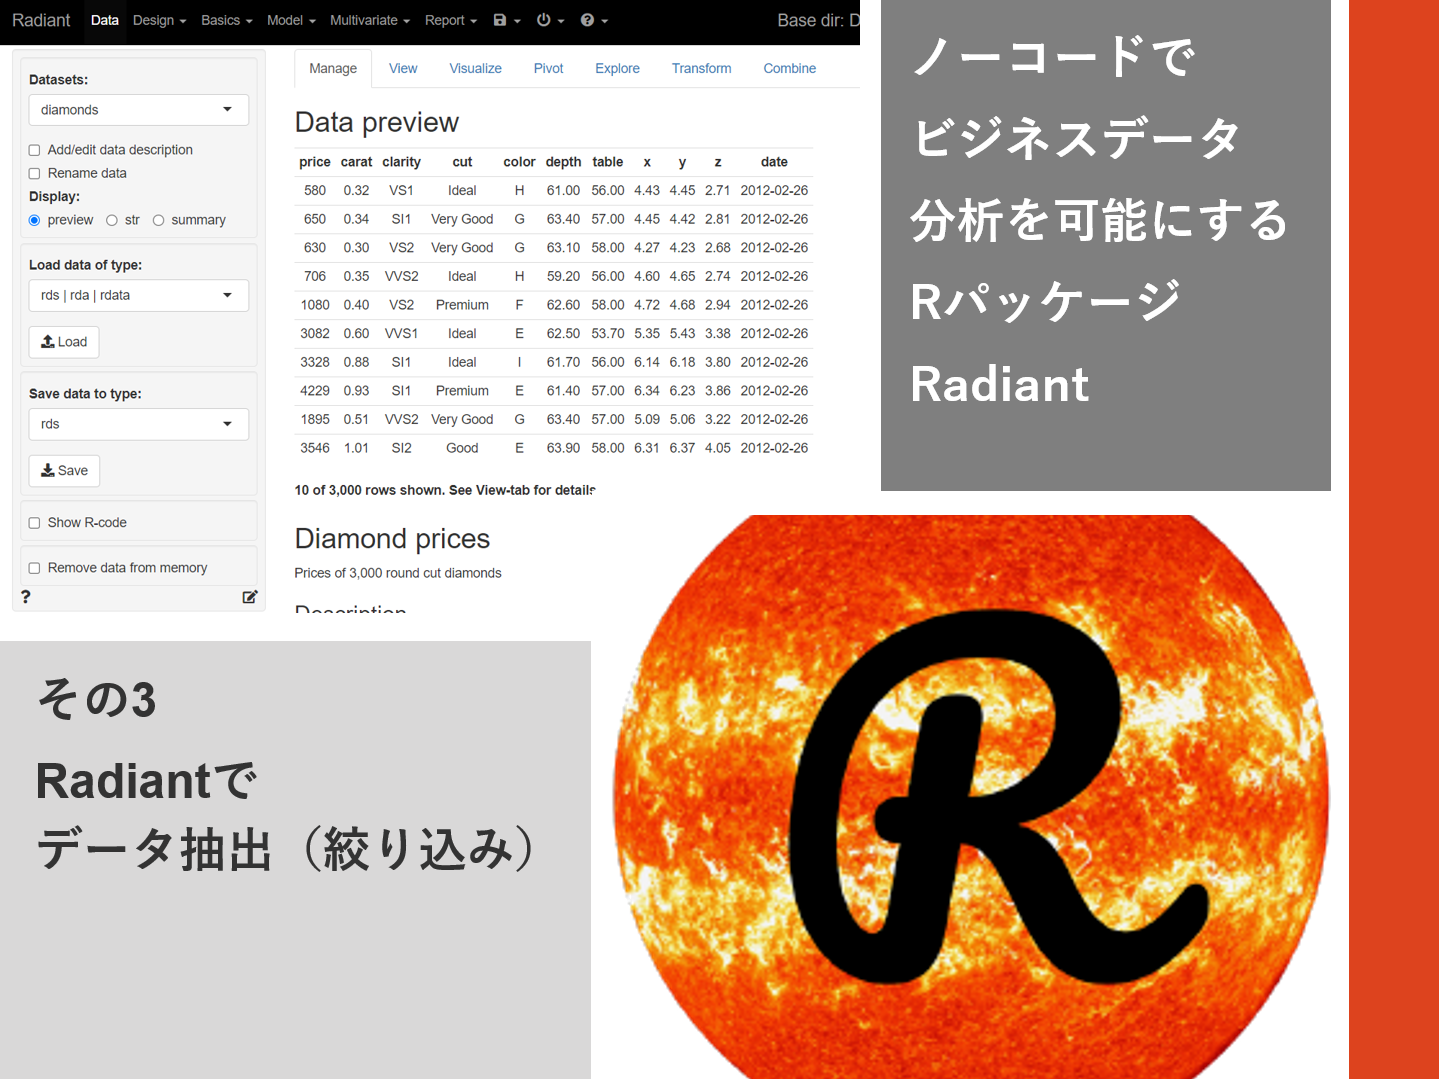 ノーコードでビジネスデータ分析を可能にするRパッケージRadiant<br>その3（Radiantでデータ抽出（絞り込み））